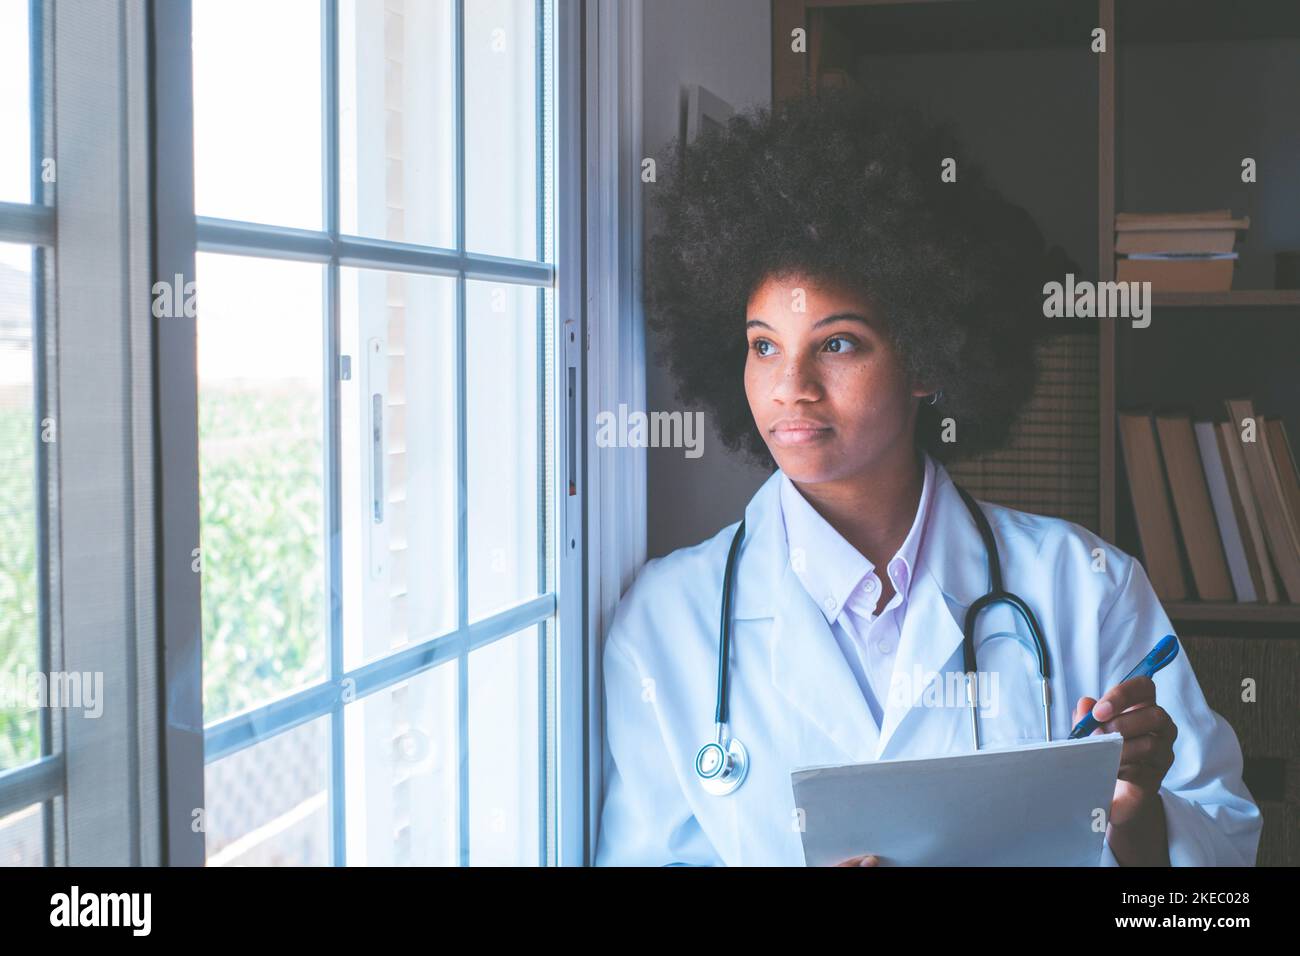 Medico afro-americano premuroso con stetoscopio, documenti e penna che guarda fuori dalla finestra della sua clinica. Serio lavoratore di heathcare di fronte contemplativo ammirando la vista dalla finestra Foto Stock